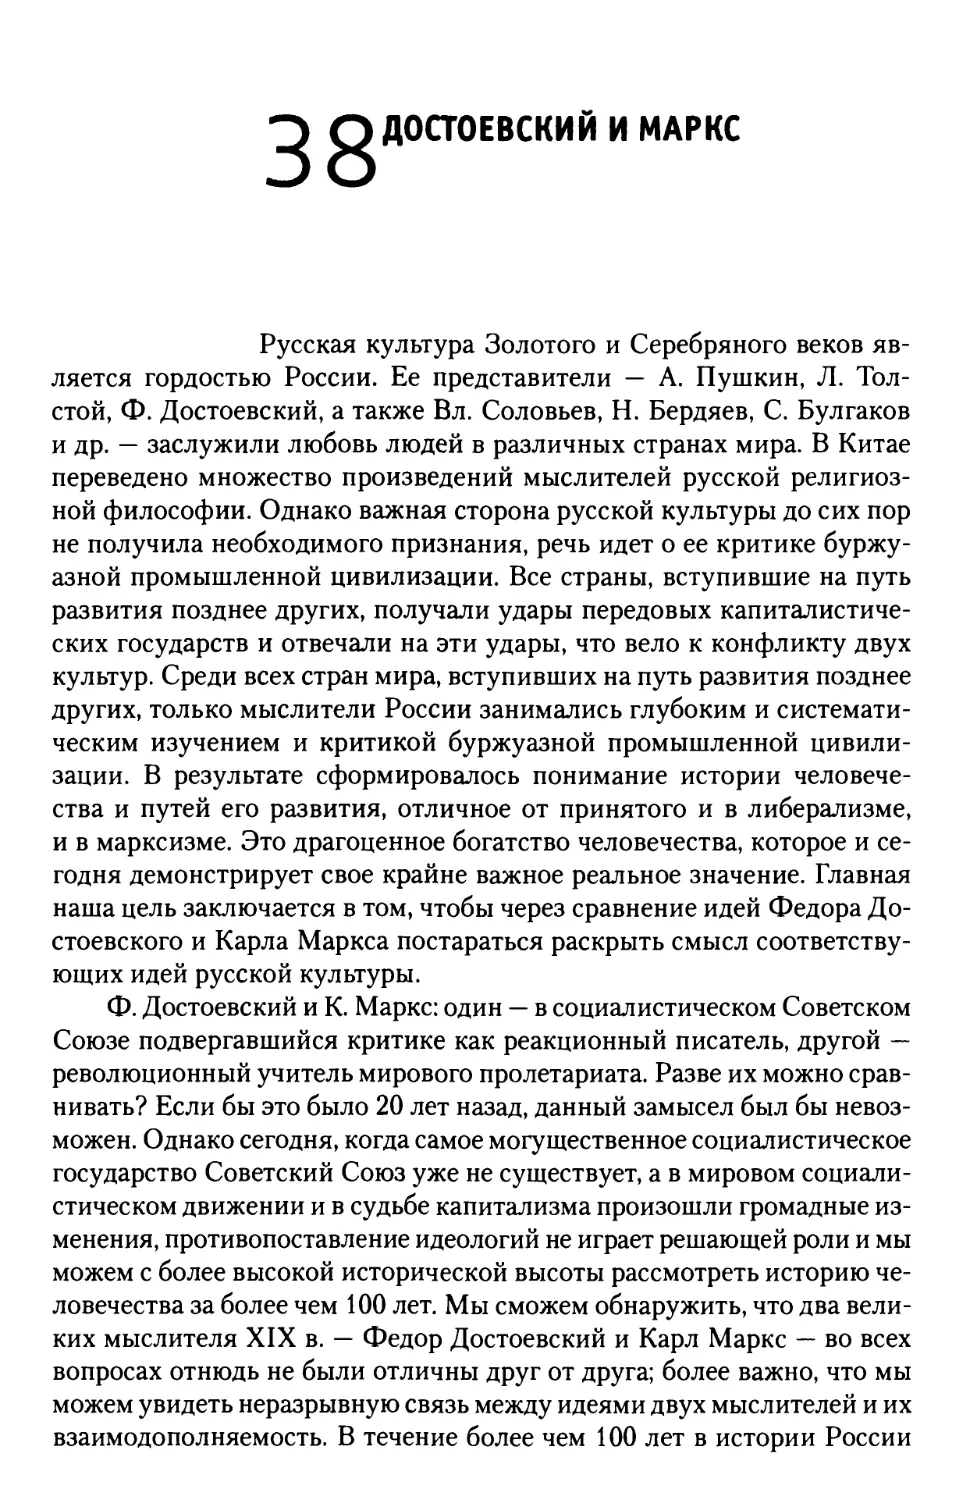 38. Достоевский и Маркс